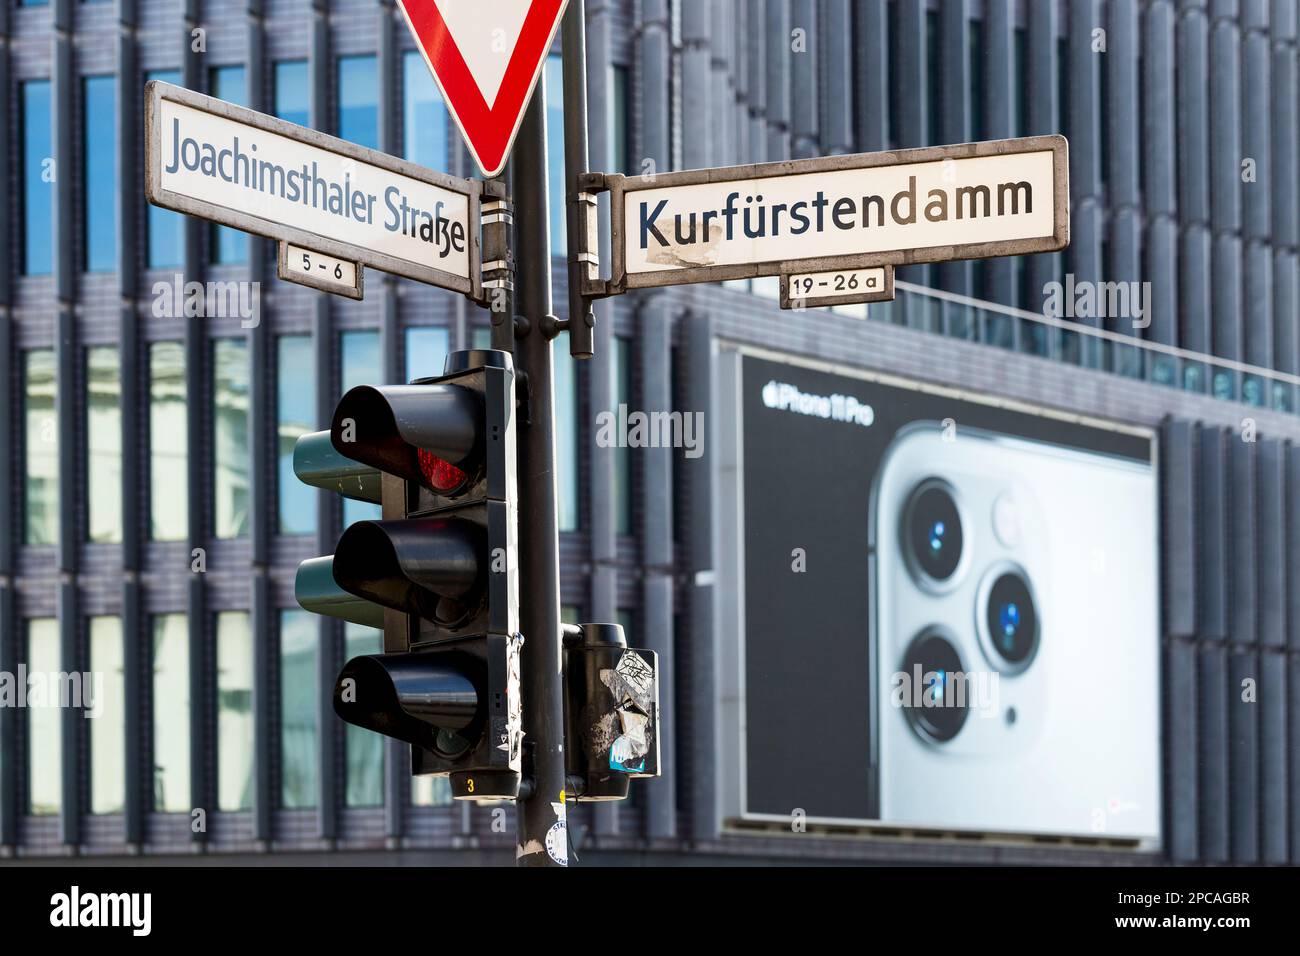 Berlino, Germania 10-7-2019 St segno del Kurfürstendamm, uno dei viali più famosi della città, noto anche come Ku'damm. Foto Stock